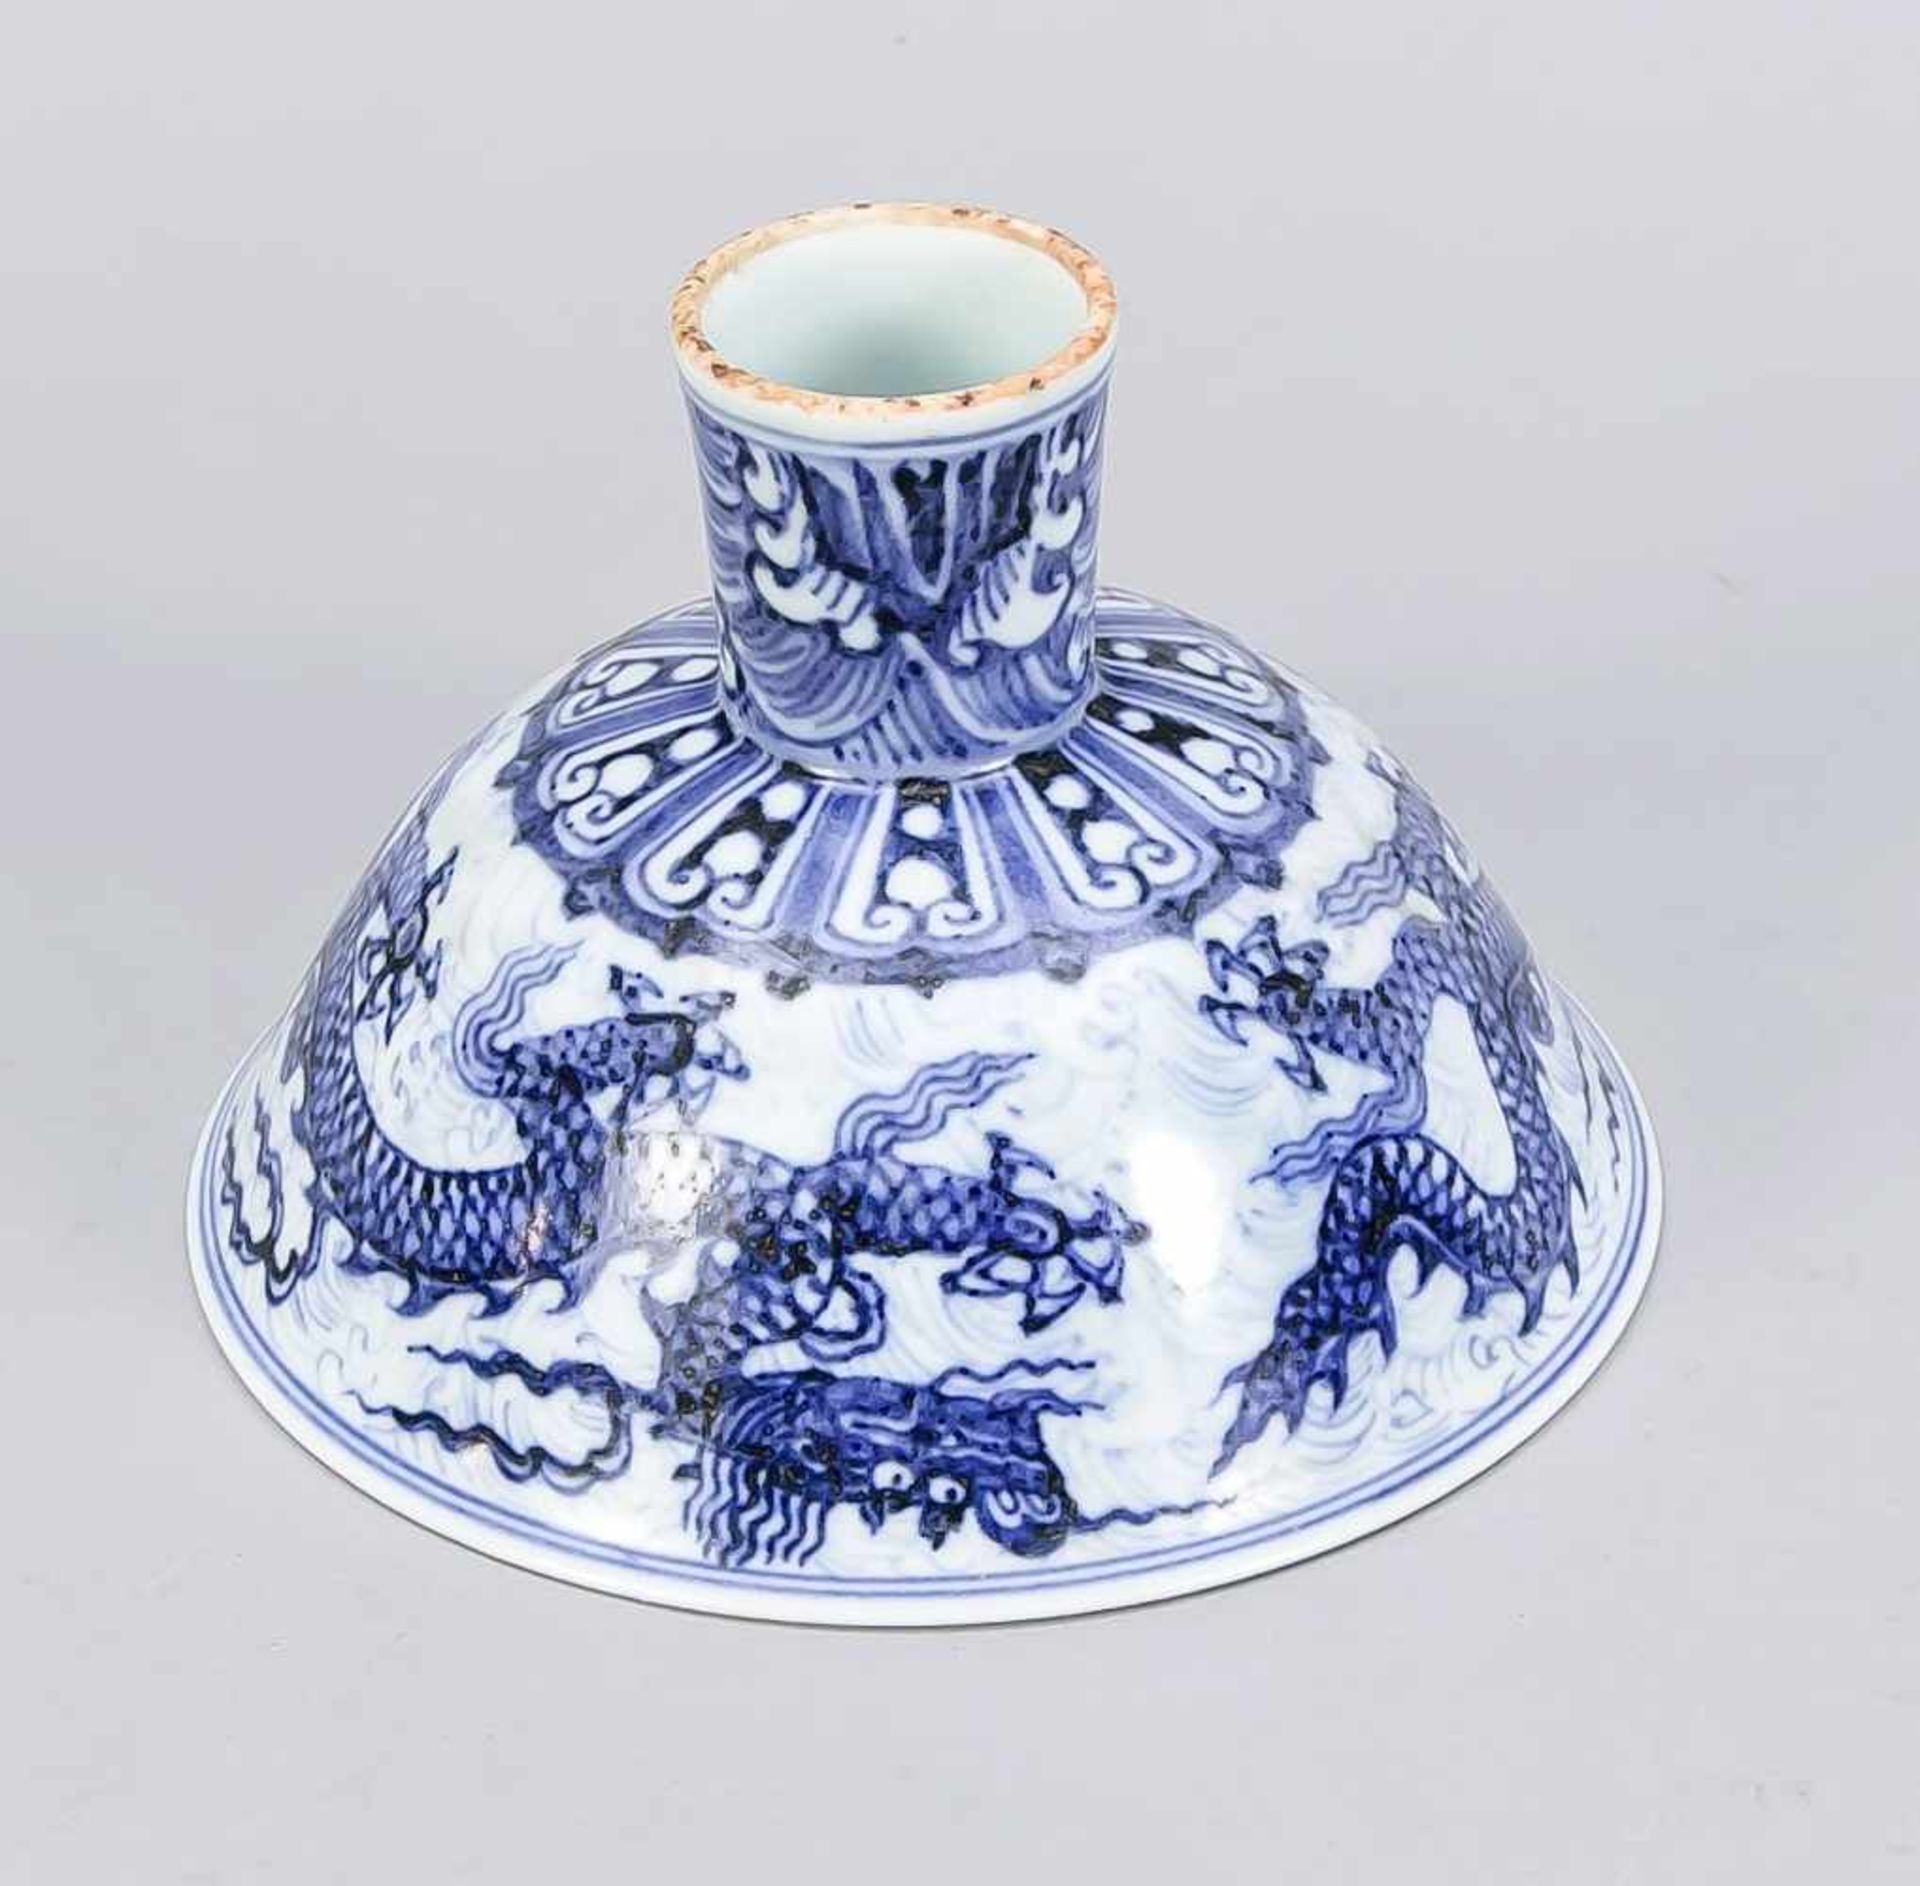 Drachen-Fußschale, China, 19. Jh.? Dekor in Kobaltblau, im Spiegel mit einem Drachen vorstilisierten - Bild 3 aus 3